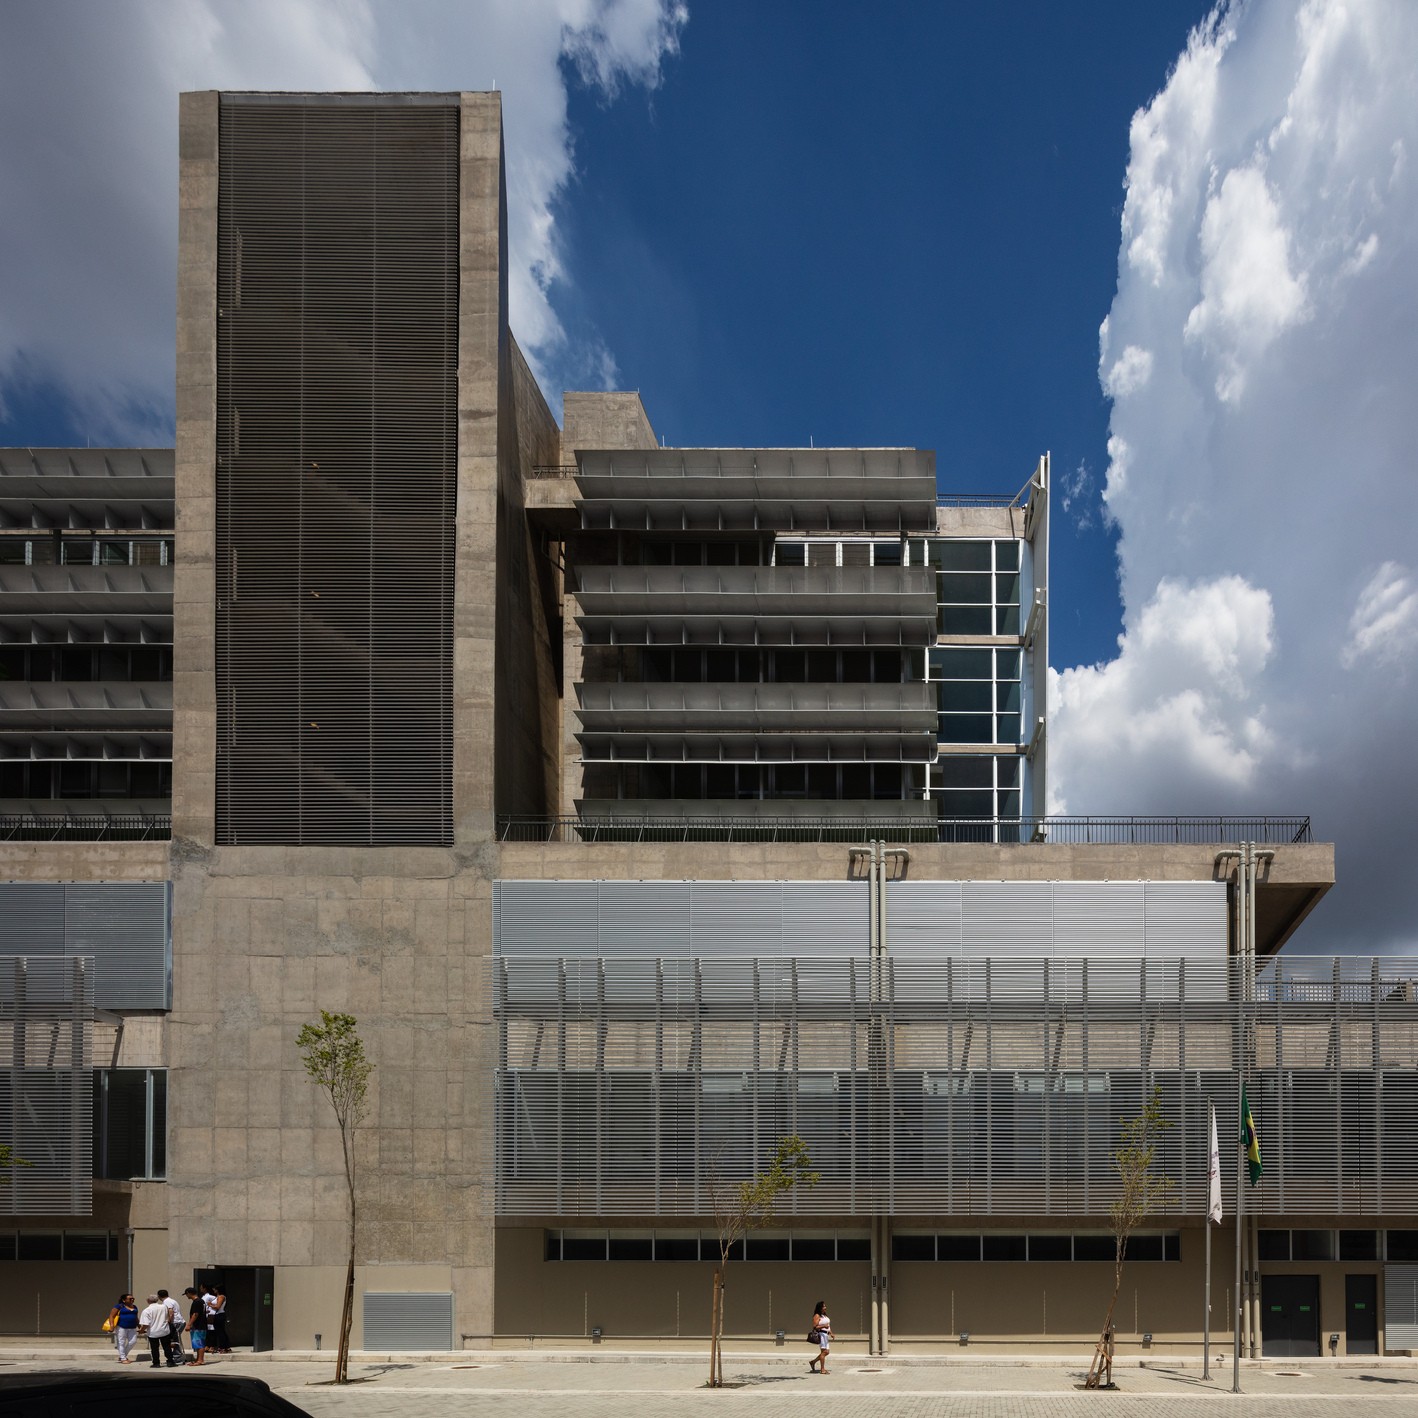 Hospital de Urgências de São Bernardo do Campo tem projeto arquitetônico focado em qualidade de atendimento a pacientes (Foto: Nelson Kon)